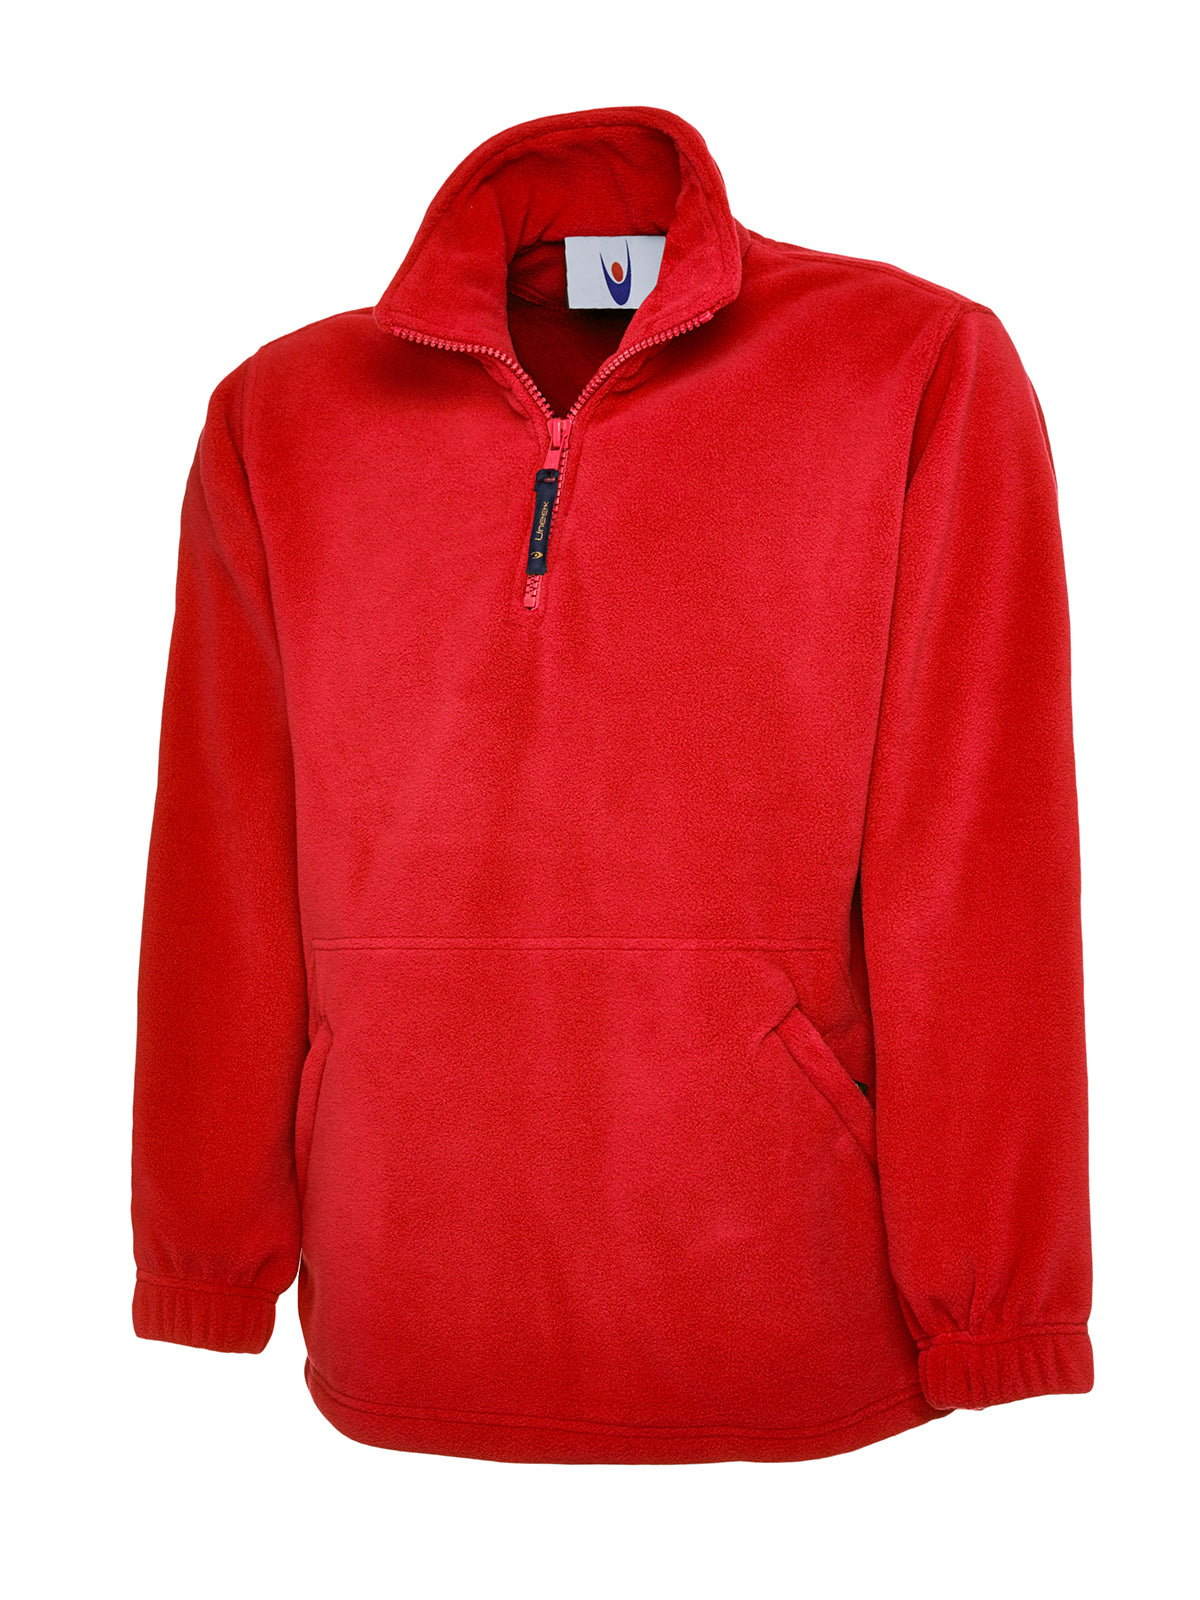 Uneek Childrens Full Zip Micro Fleece Jacket UC603 - Red